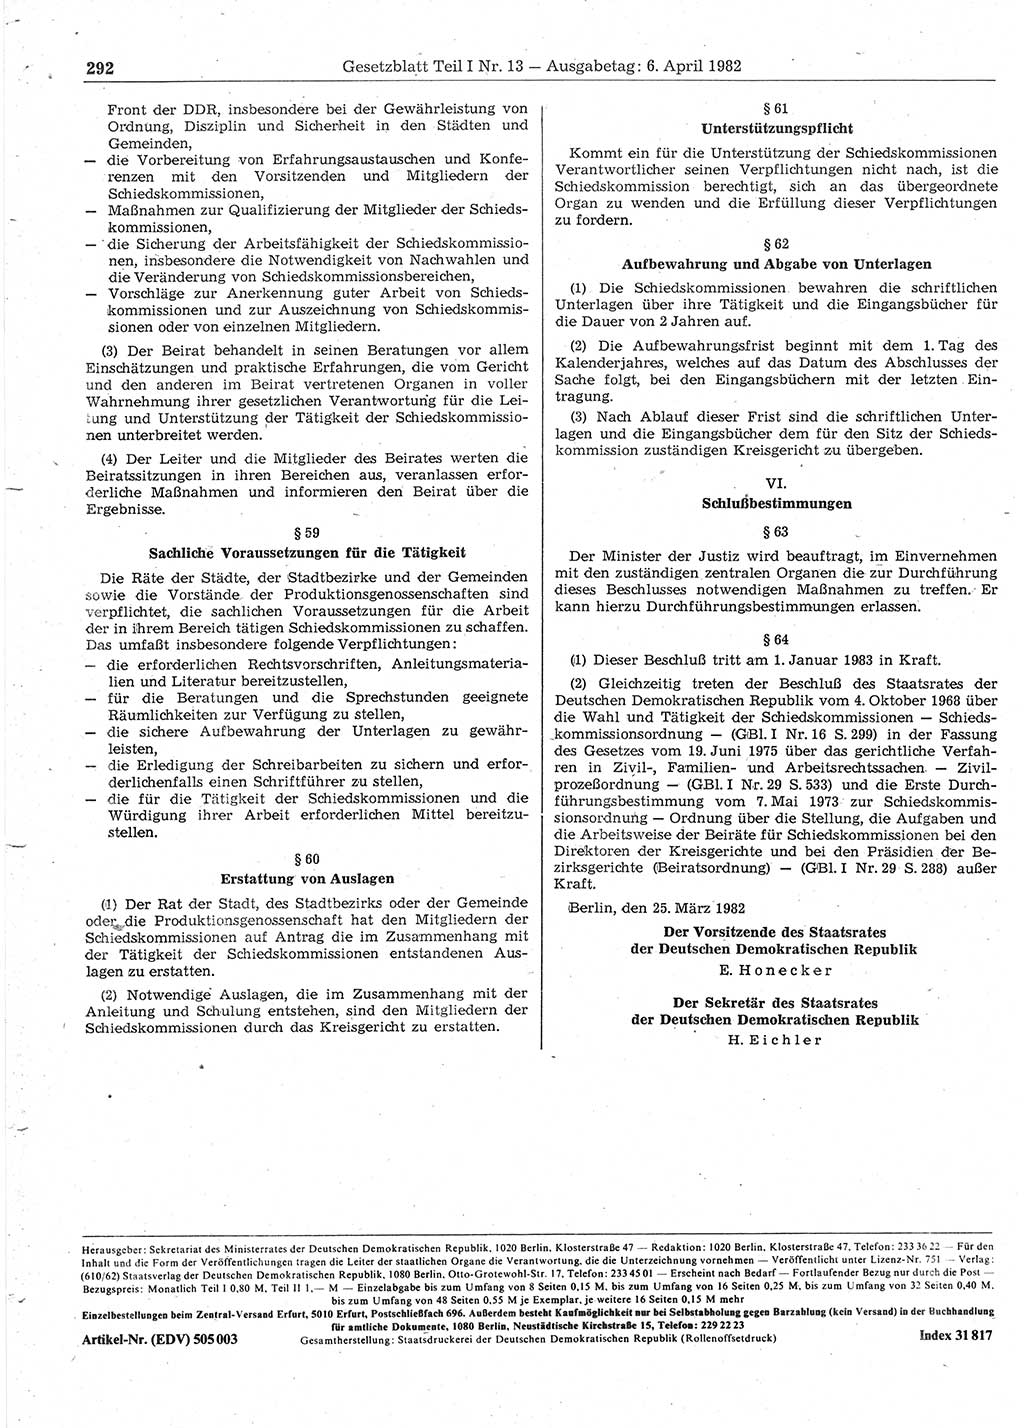 Gesetzblatt (GBl.) der Deutschen Demokratischen Republik (DDR) Teil Ⅰ 1982, Seite 292 (GBl. DDR Ⅰ 1982, S. 292)